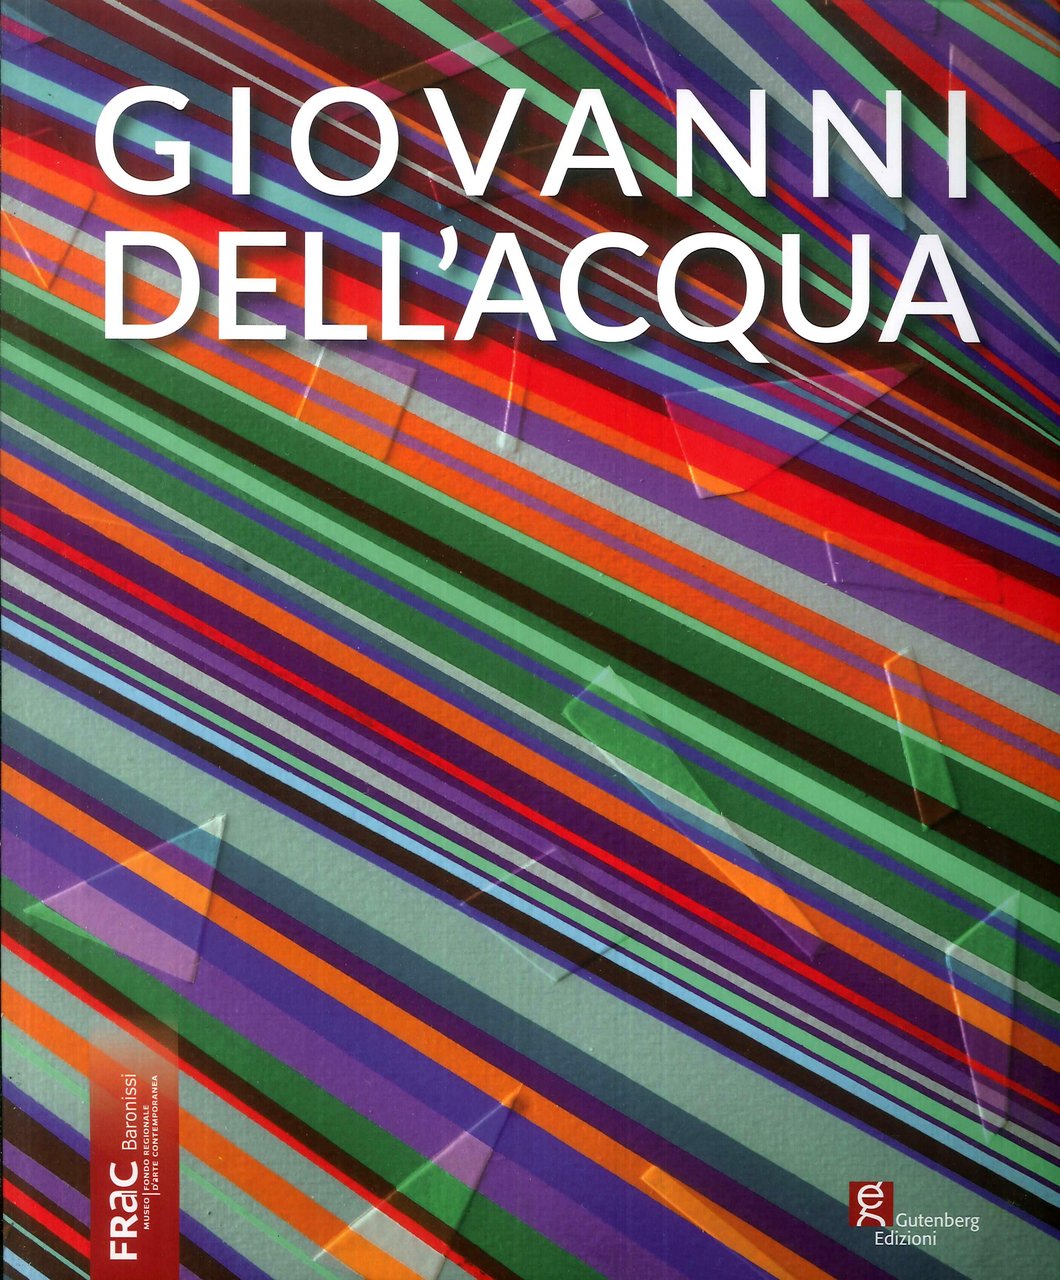 Giovanni dell'Acqua, Baronissi, Gutenberg Edizioni, 2019